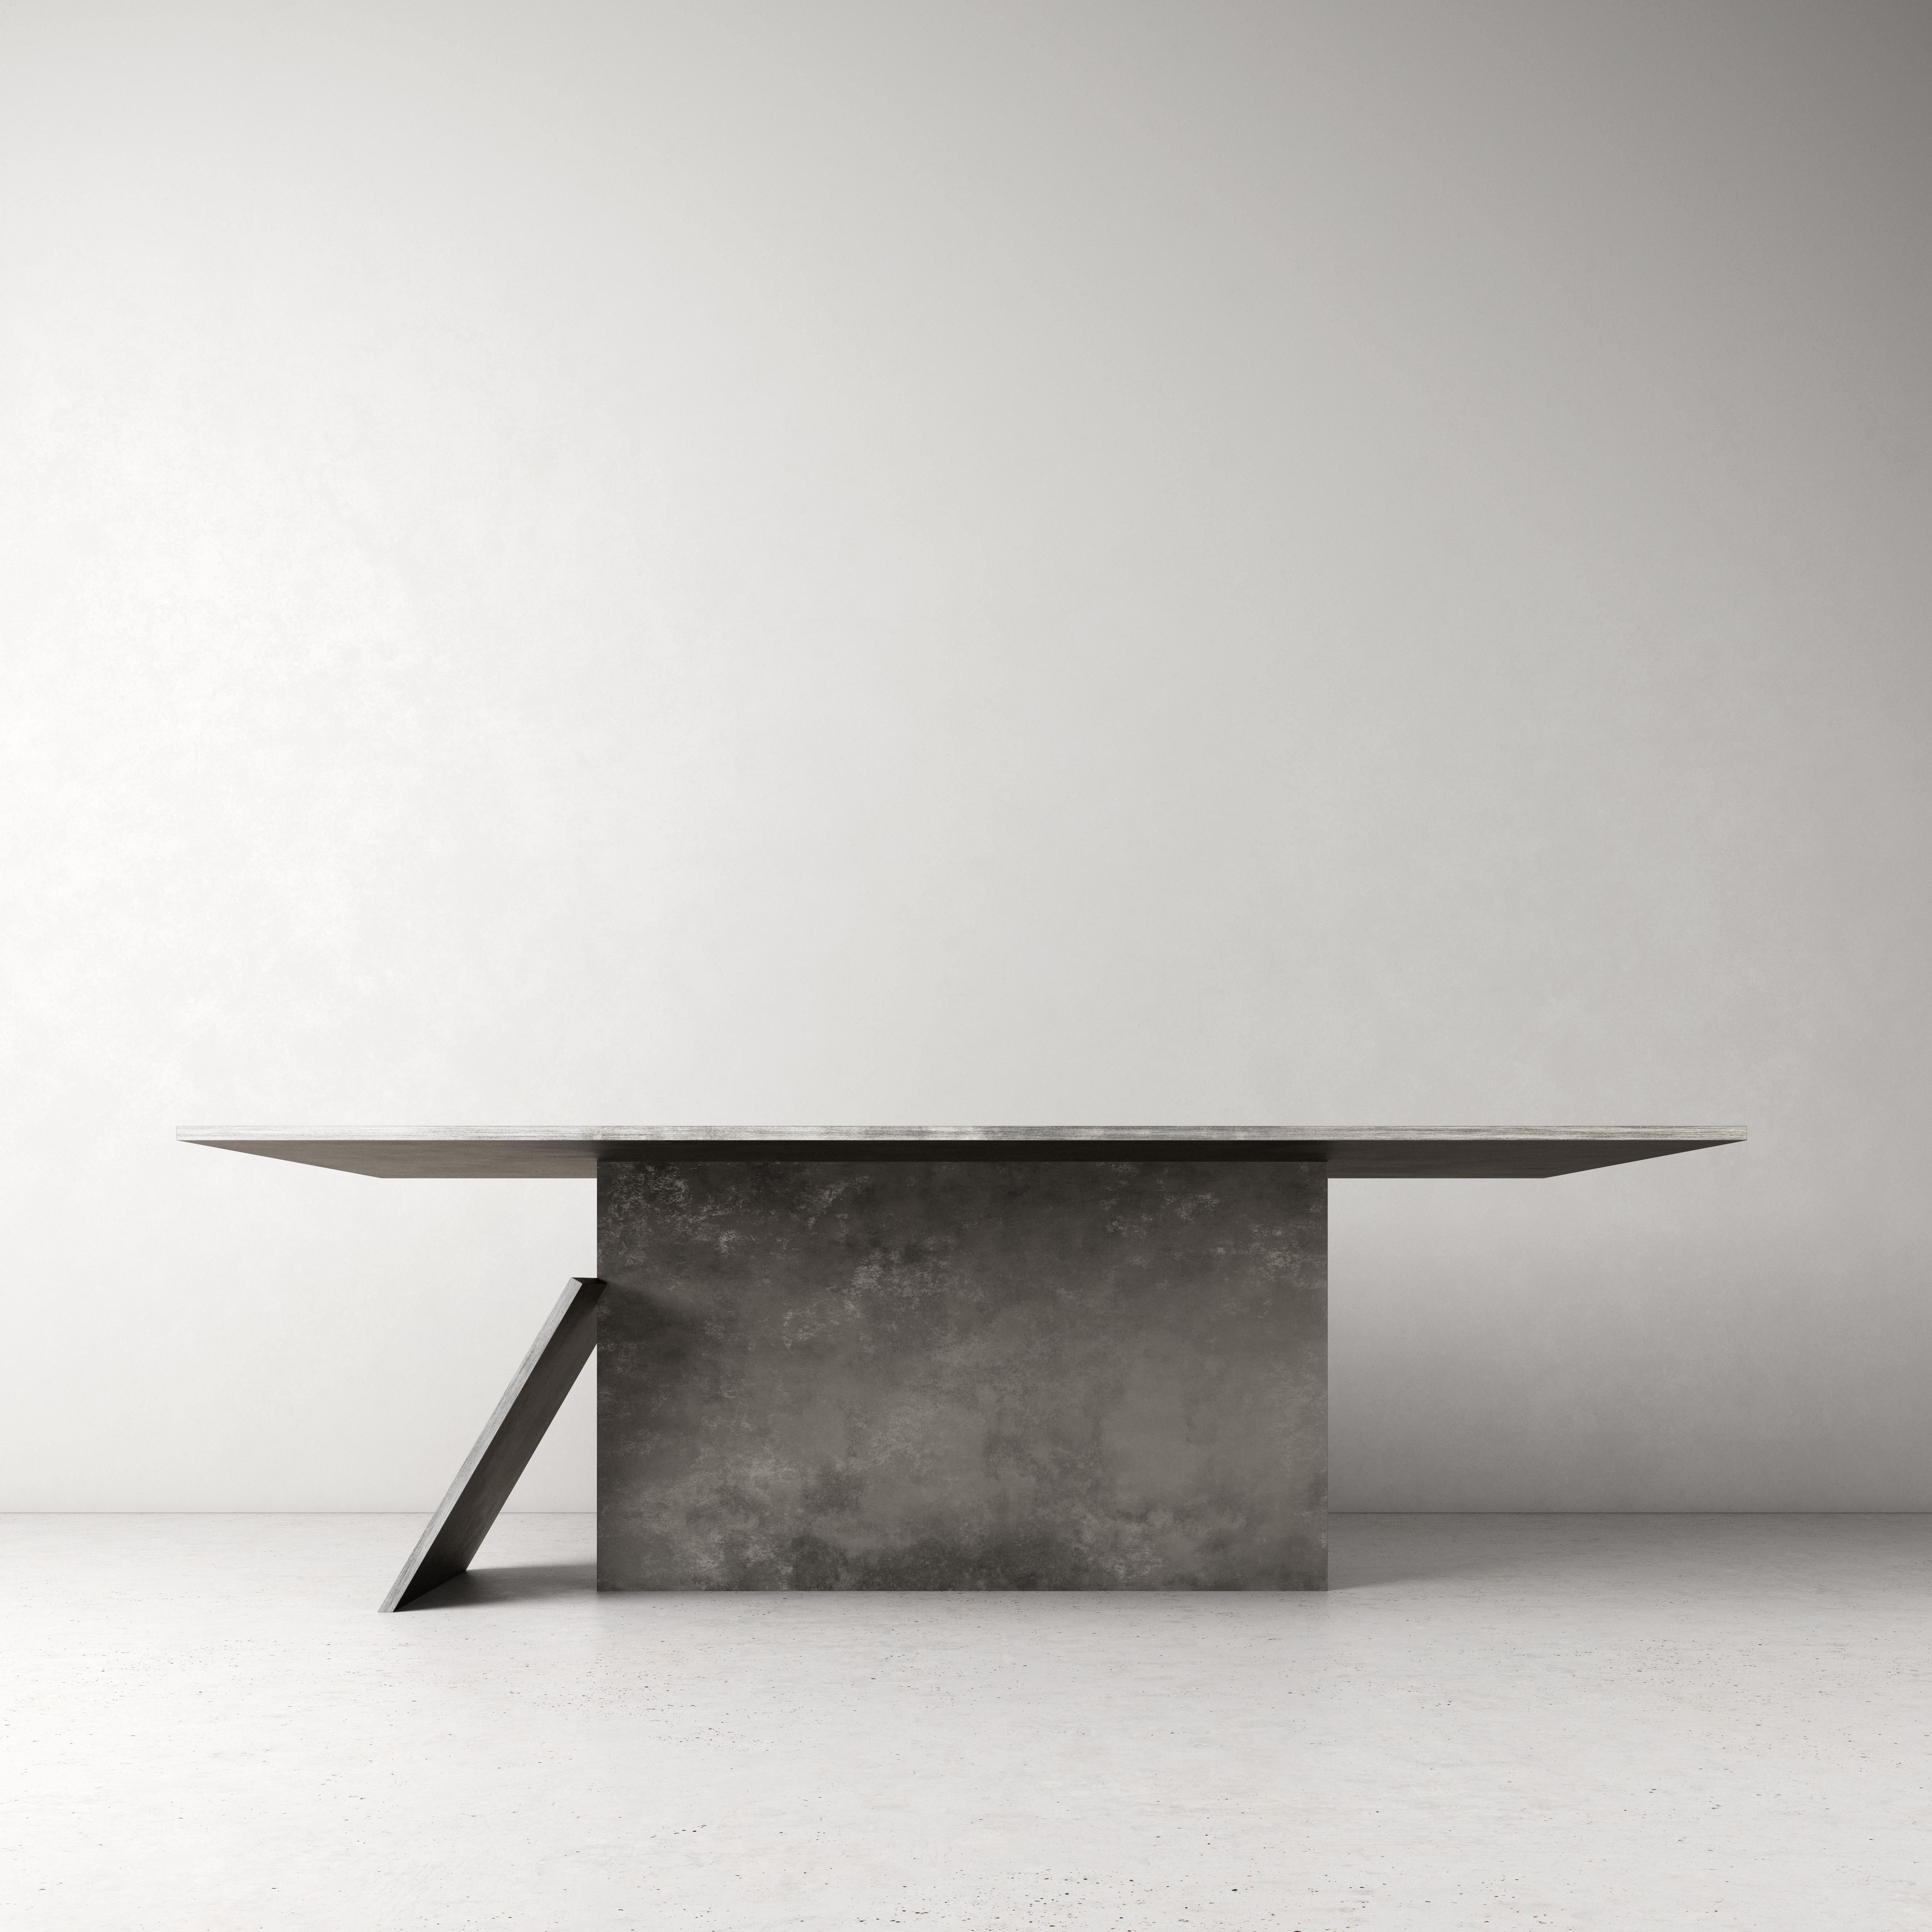 Zeitgenössischer Tisch T von dAM Atelier
Abmessungen: L 220 x B 110 x H 73
MATERIALIEN: Delabrè-Edelstahl
Auch in Verdegris-Kupfer erhältlich, bitte kontaktieren Sie uns.

dAM atelier ist ein Duo junger italienischer Architekten, die die